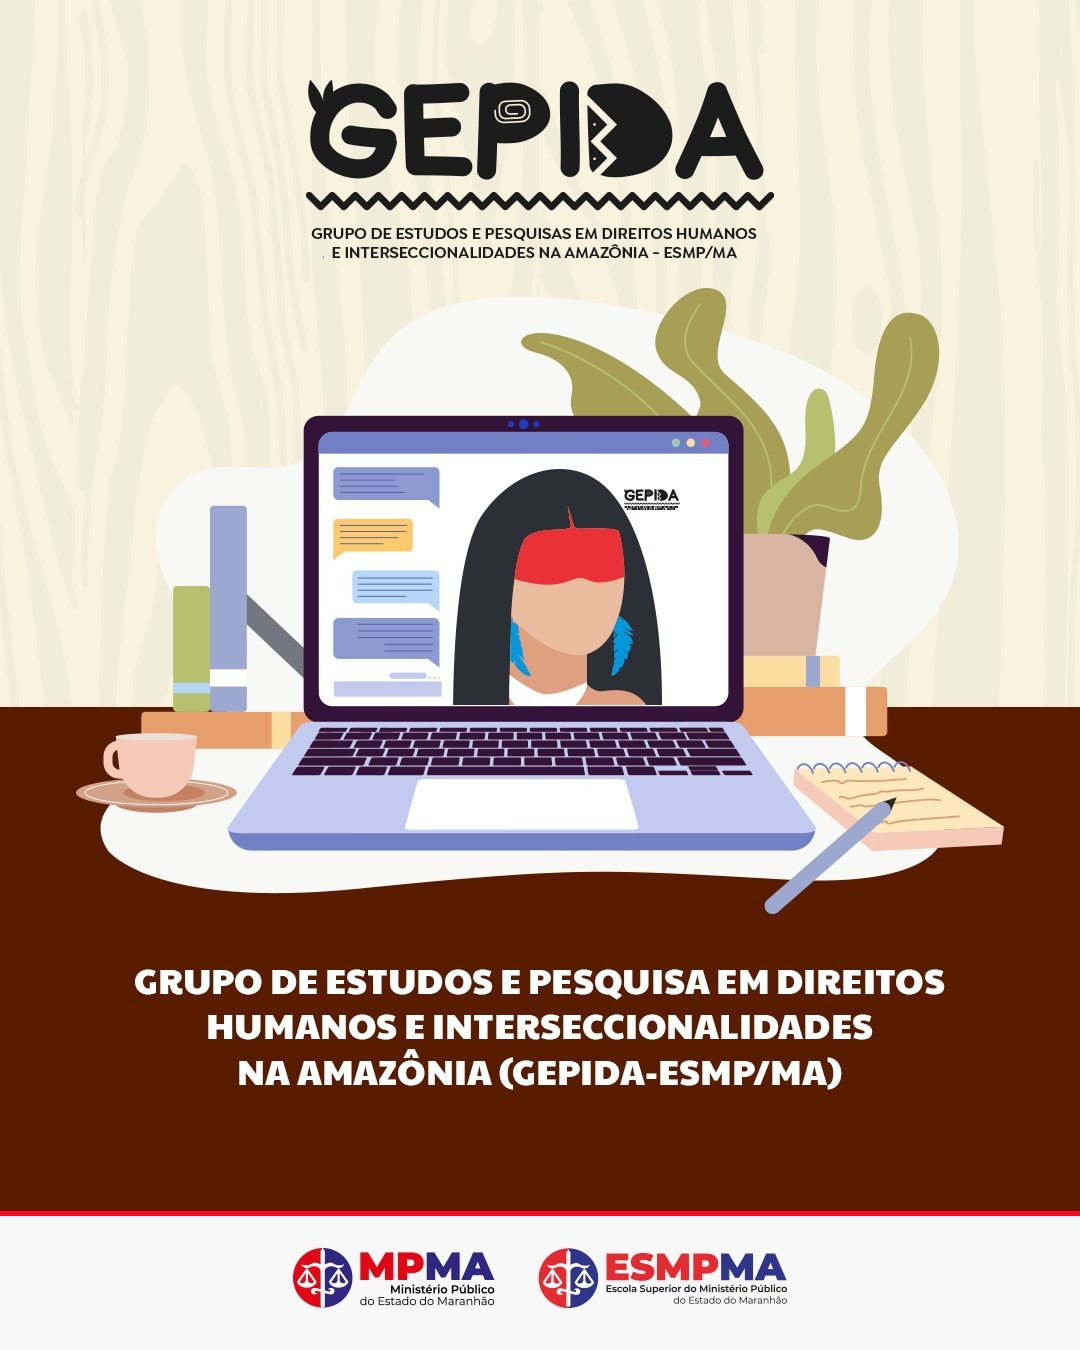 Grupo de Estudos e Pesquisa em Direitos Humanos e Interseccionalidades na Amazônia (GEPIDA-ESMP/MA)